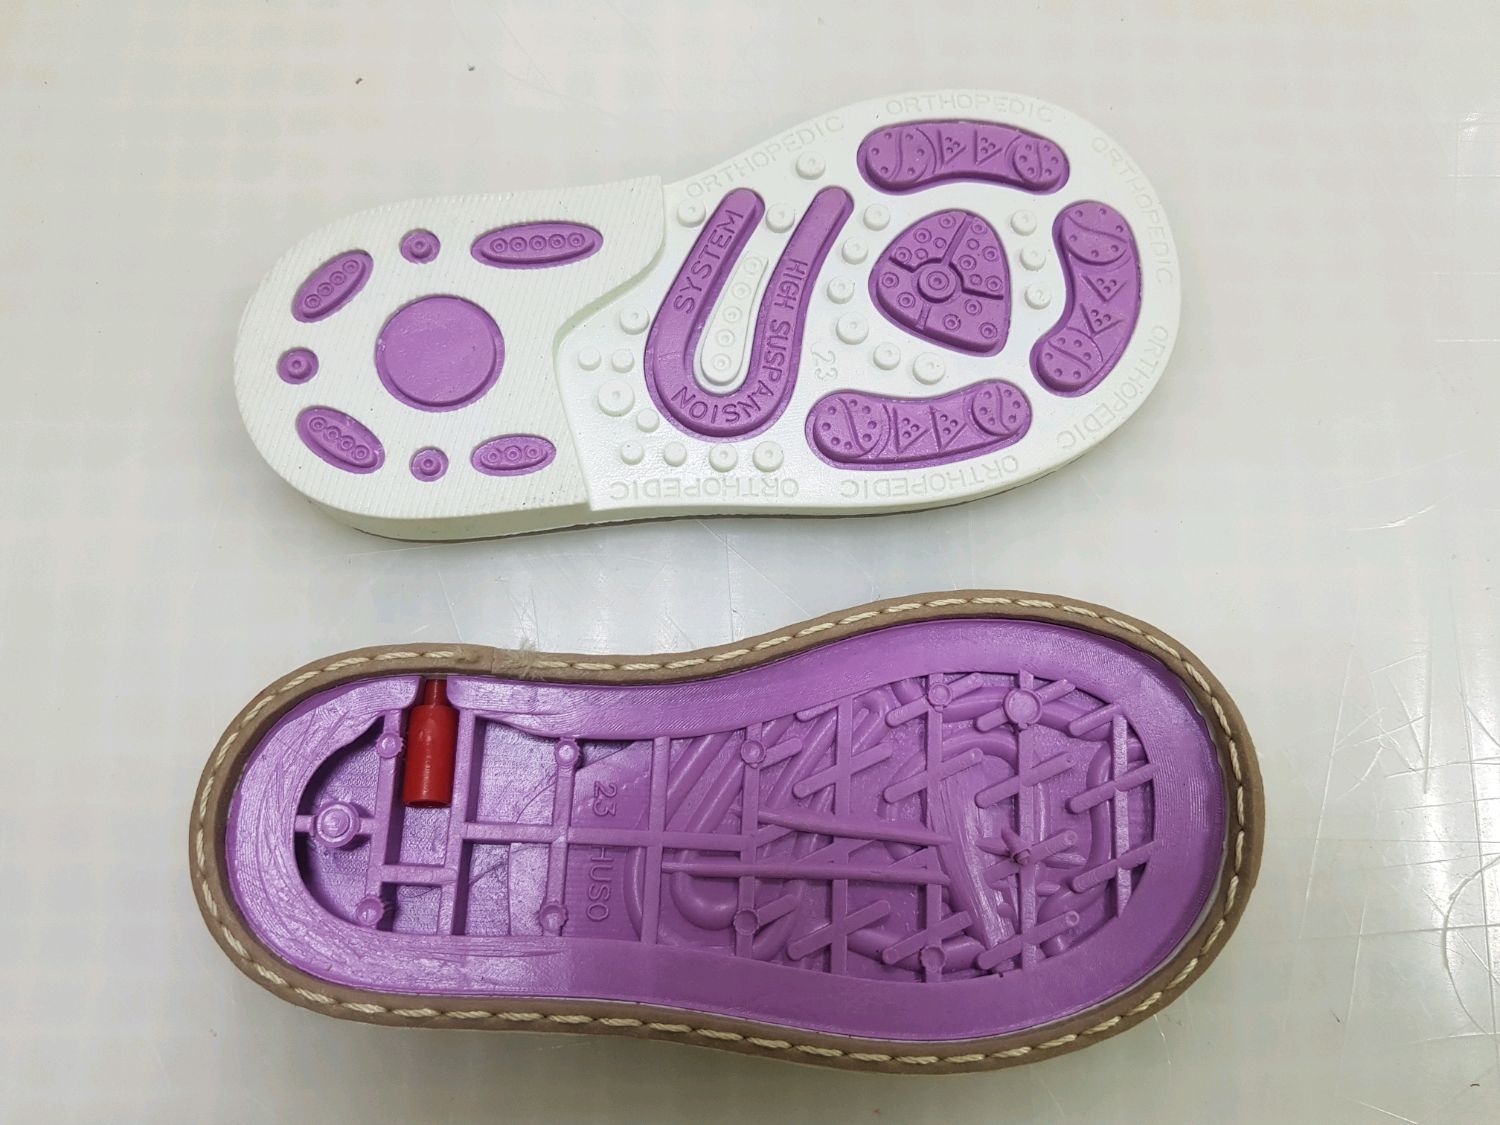 Каблук томаса для детской обуви